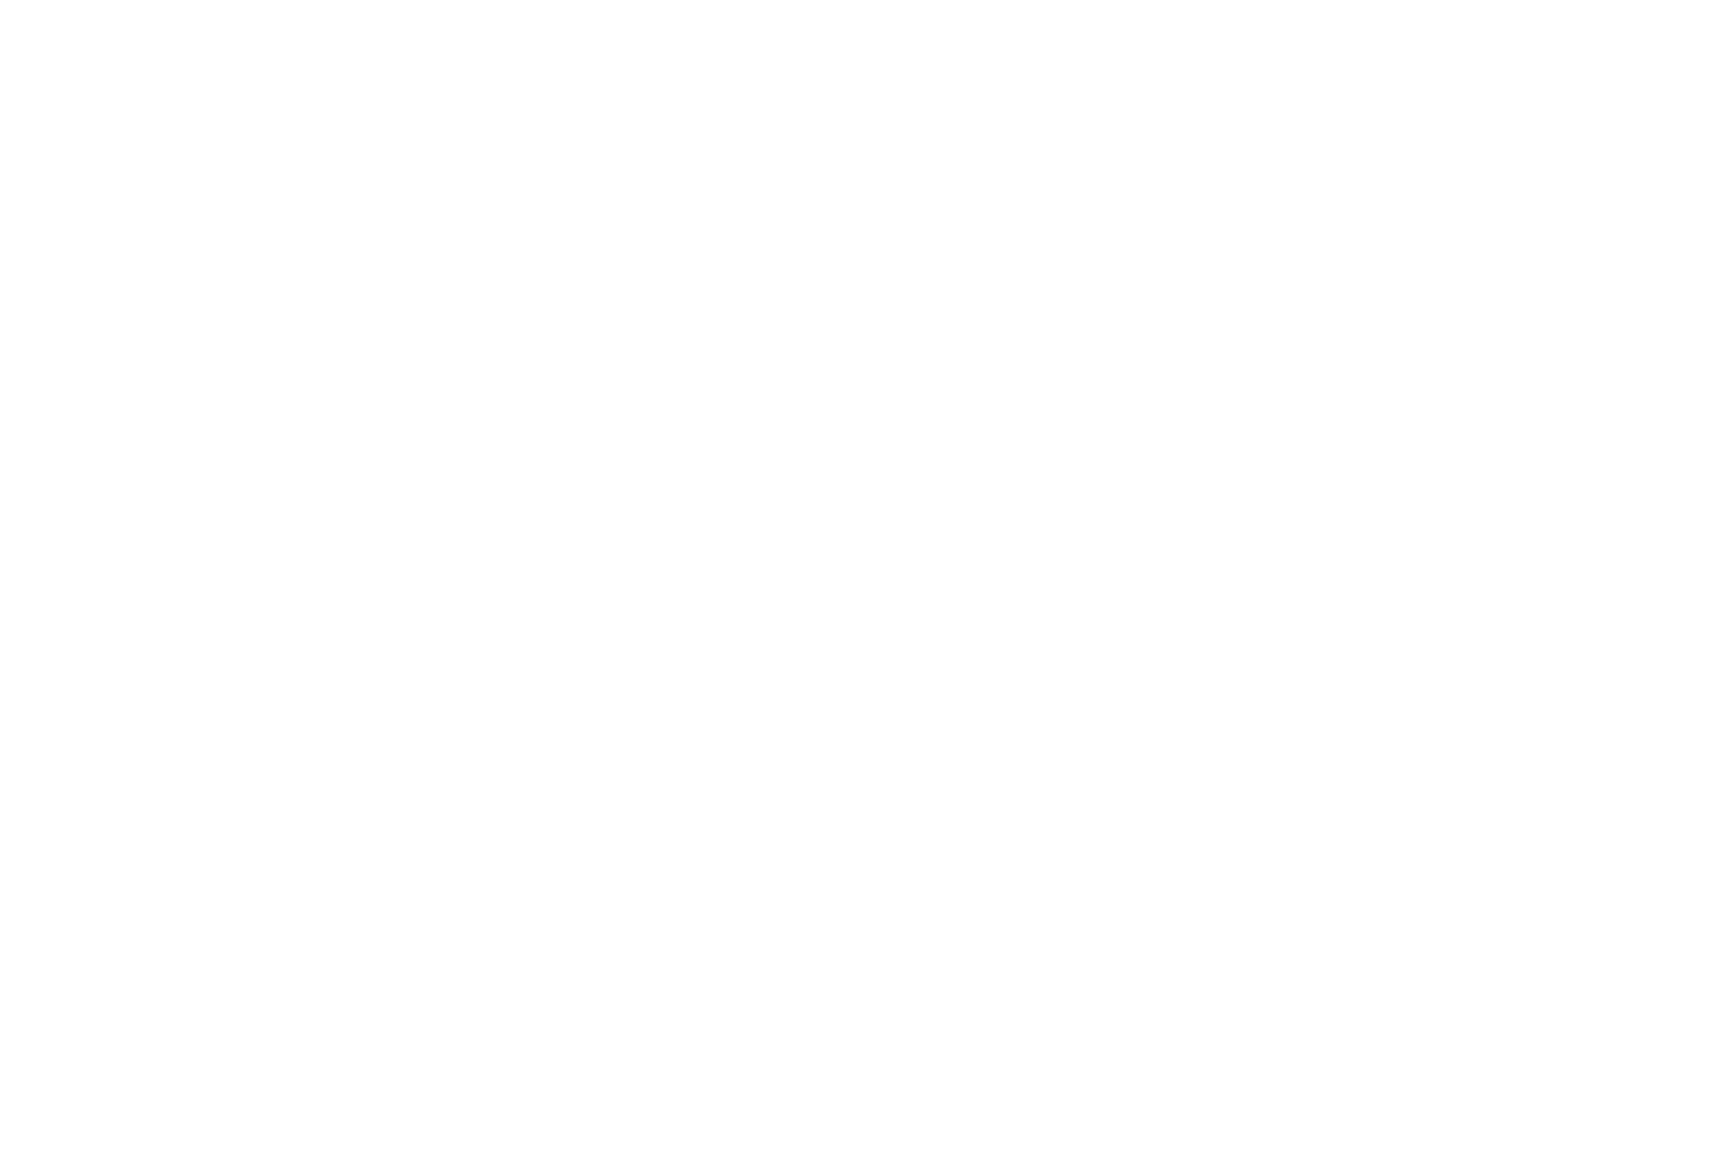 PANAVISION New Filmmaker Grant - 2016